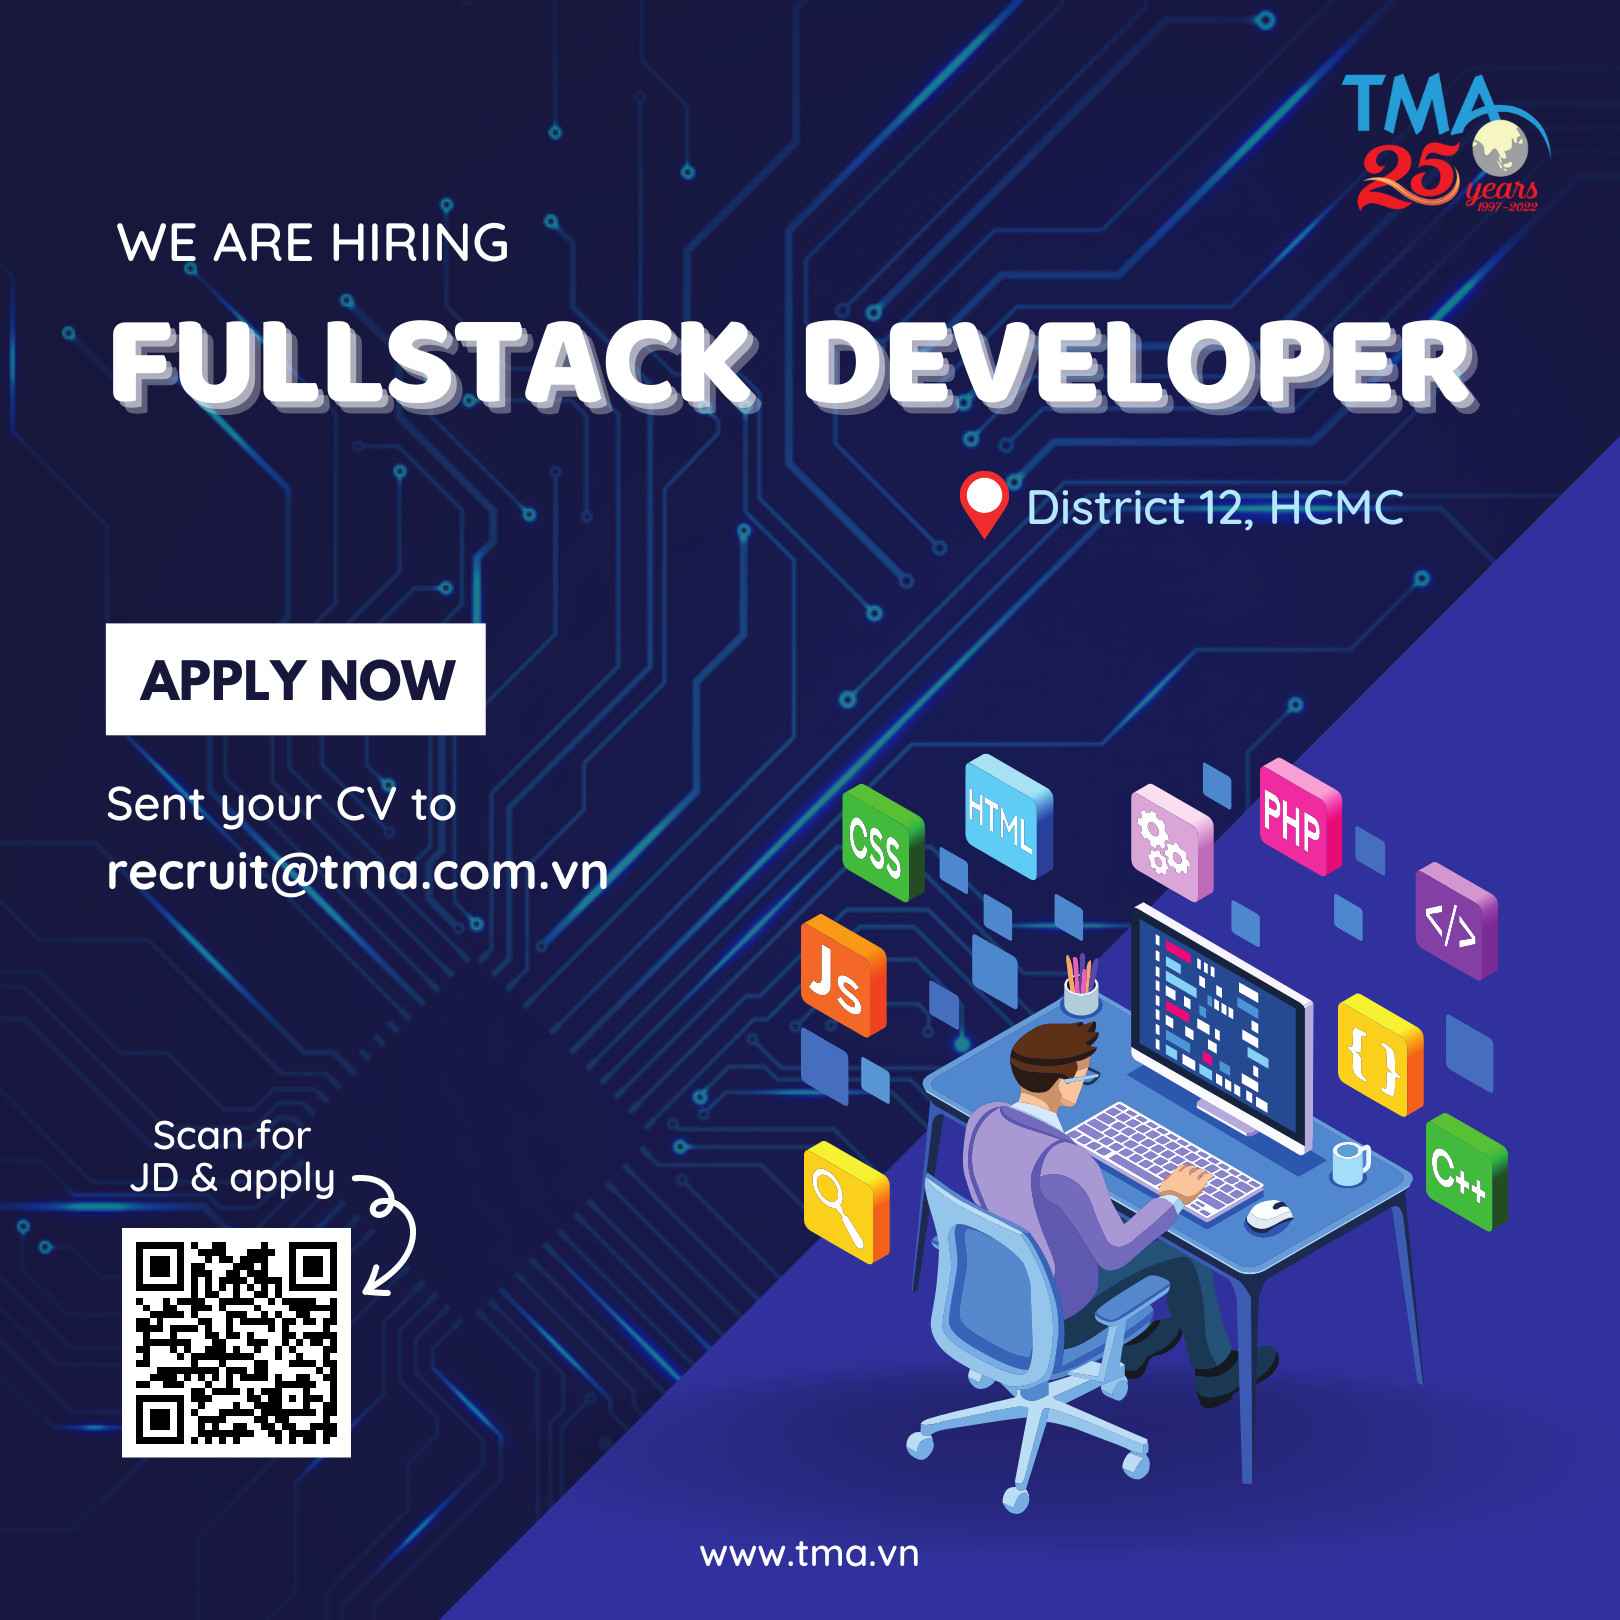 TMA is looking for Fullstack Developer